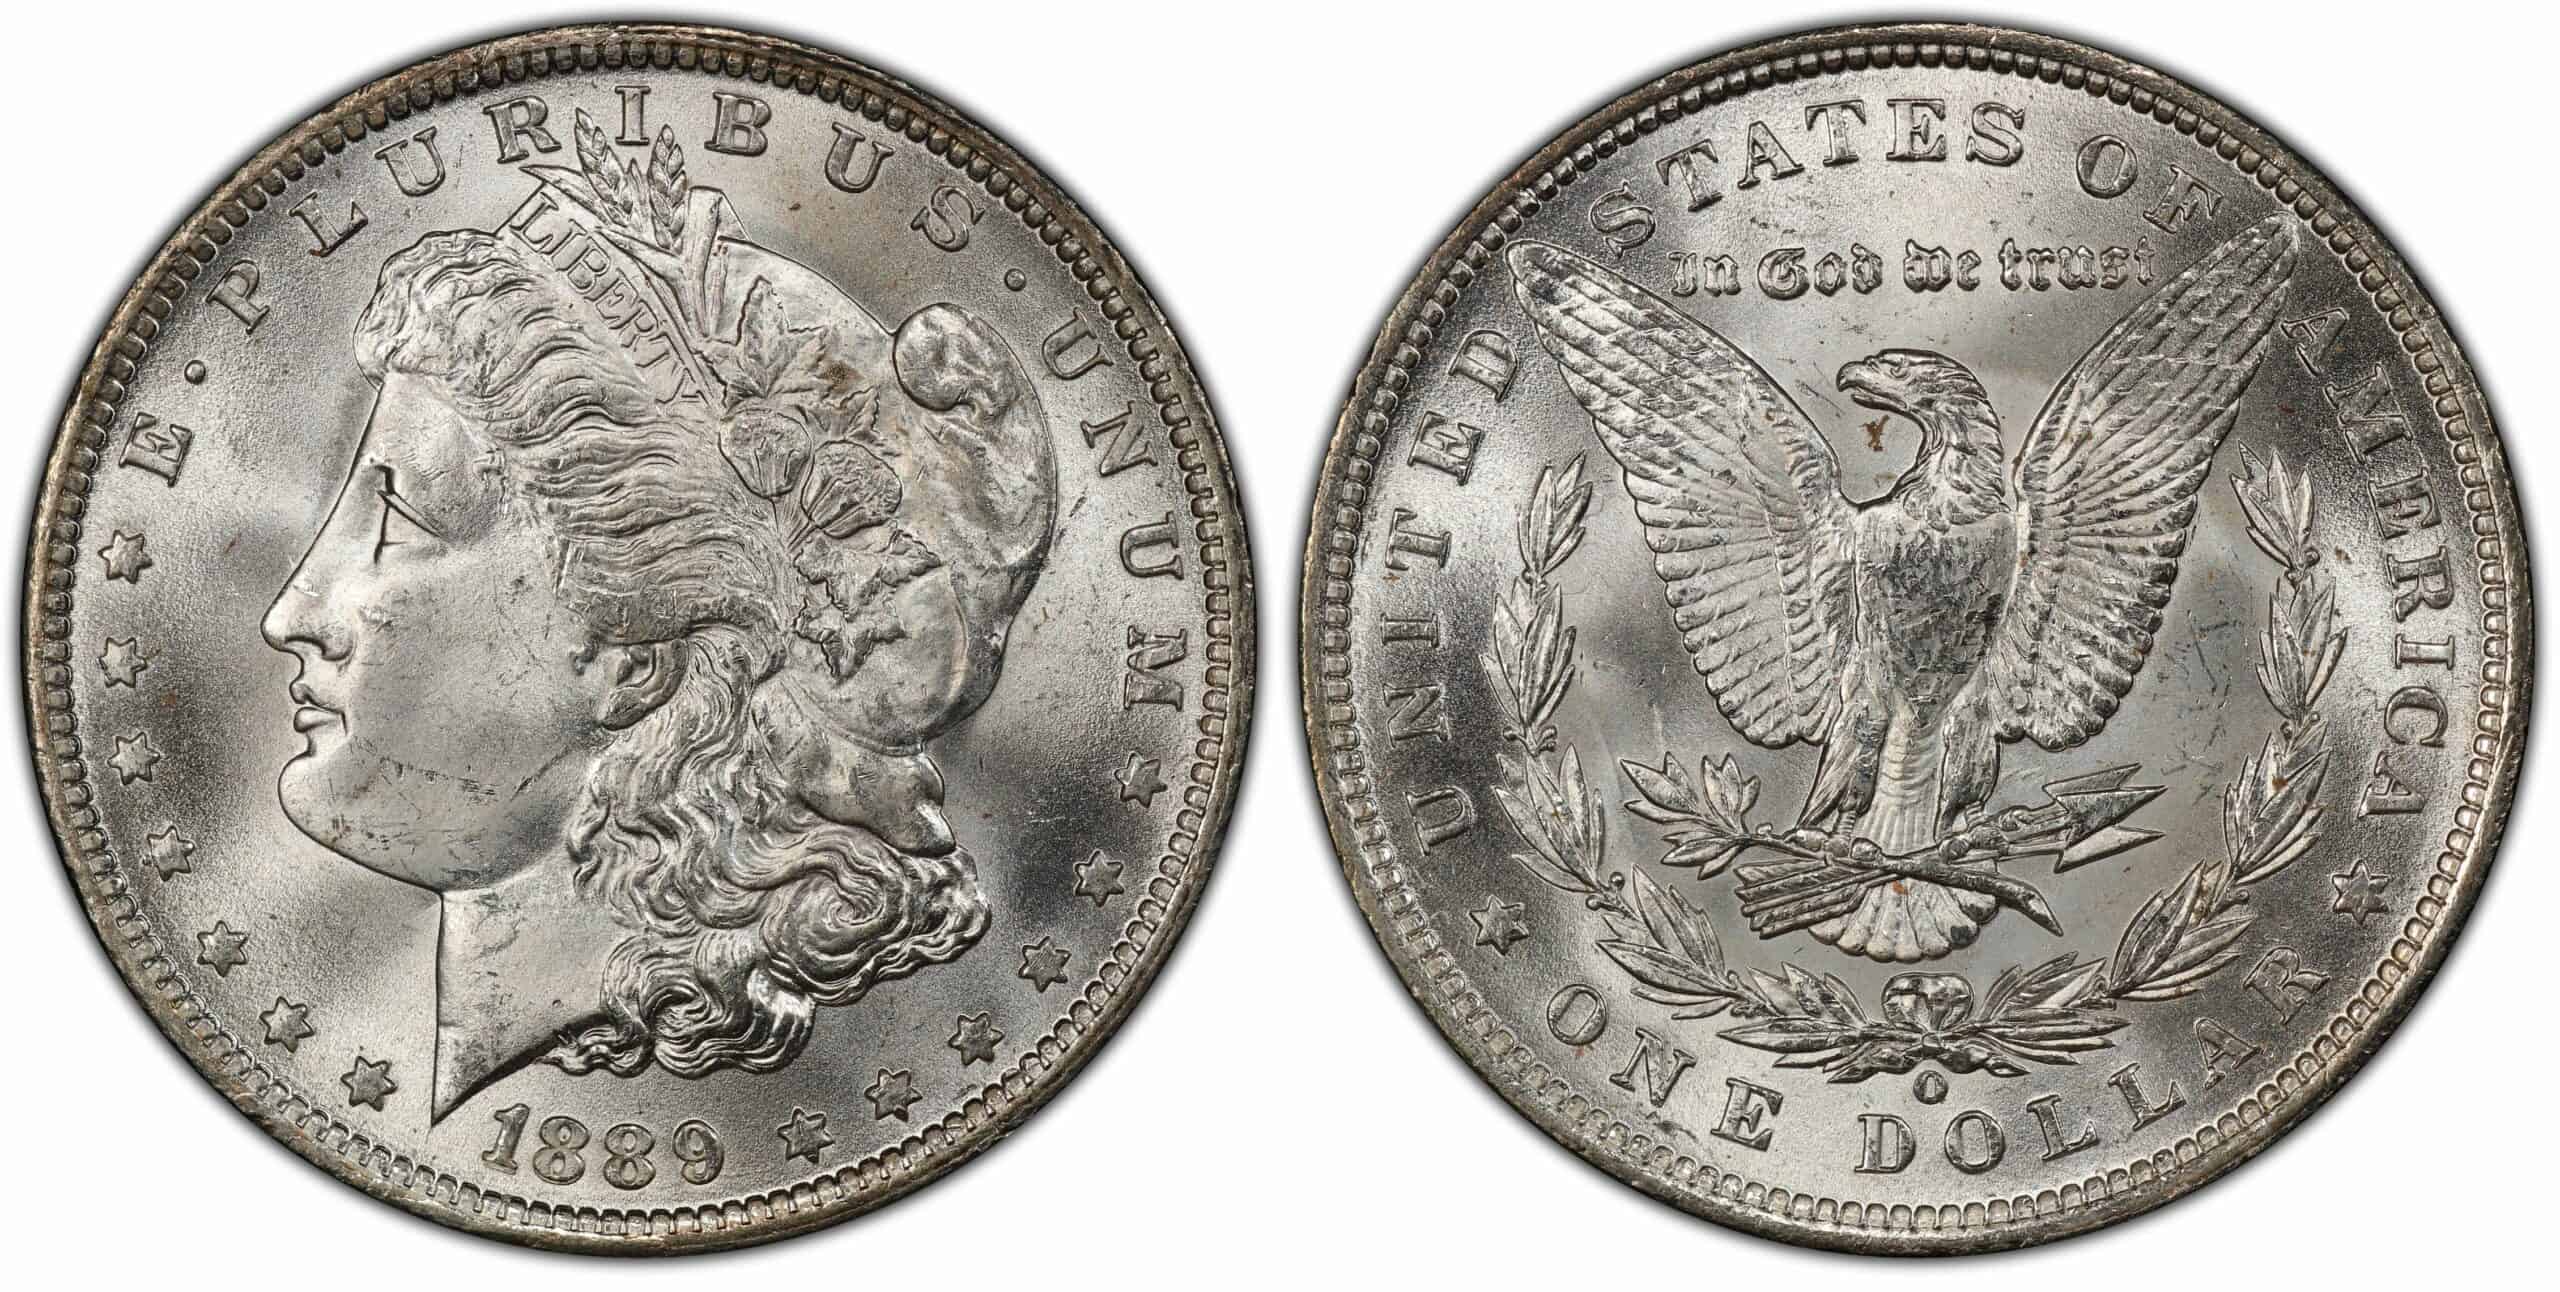 1889 Silver Dollar Die Varieties